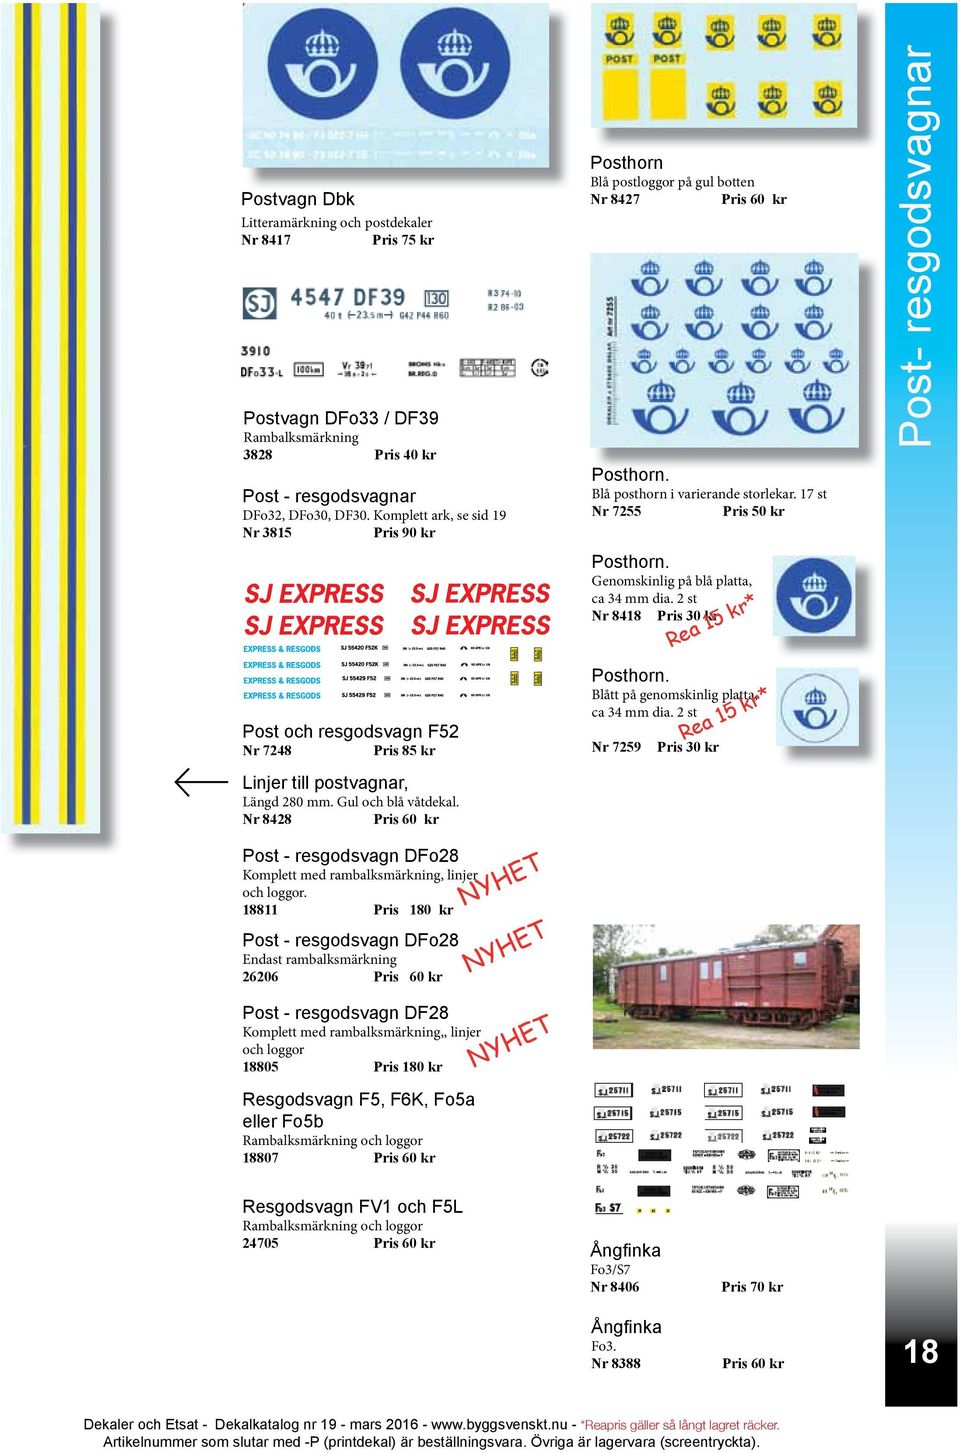 Genomskinlig på blå platta, ca 34 mm dia. 2 st Nr 8418 Rea 15 kr* Post- resgodsvagnar Post och resgodsvagn F52 Nr 7248 Pris 85 kr Linjer till postvagnar, Längd 280 mm. Gul och blå våtdekal.